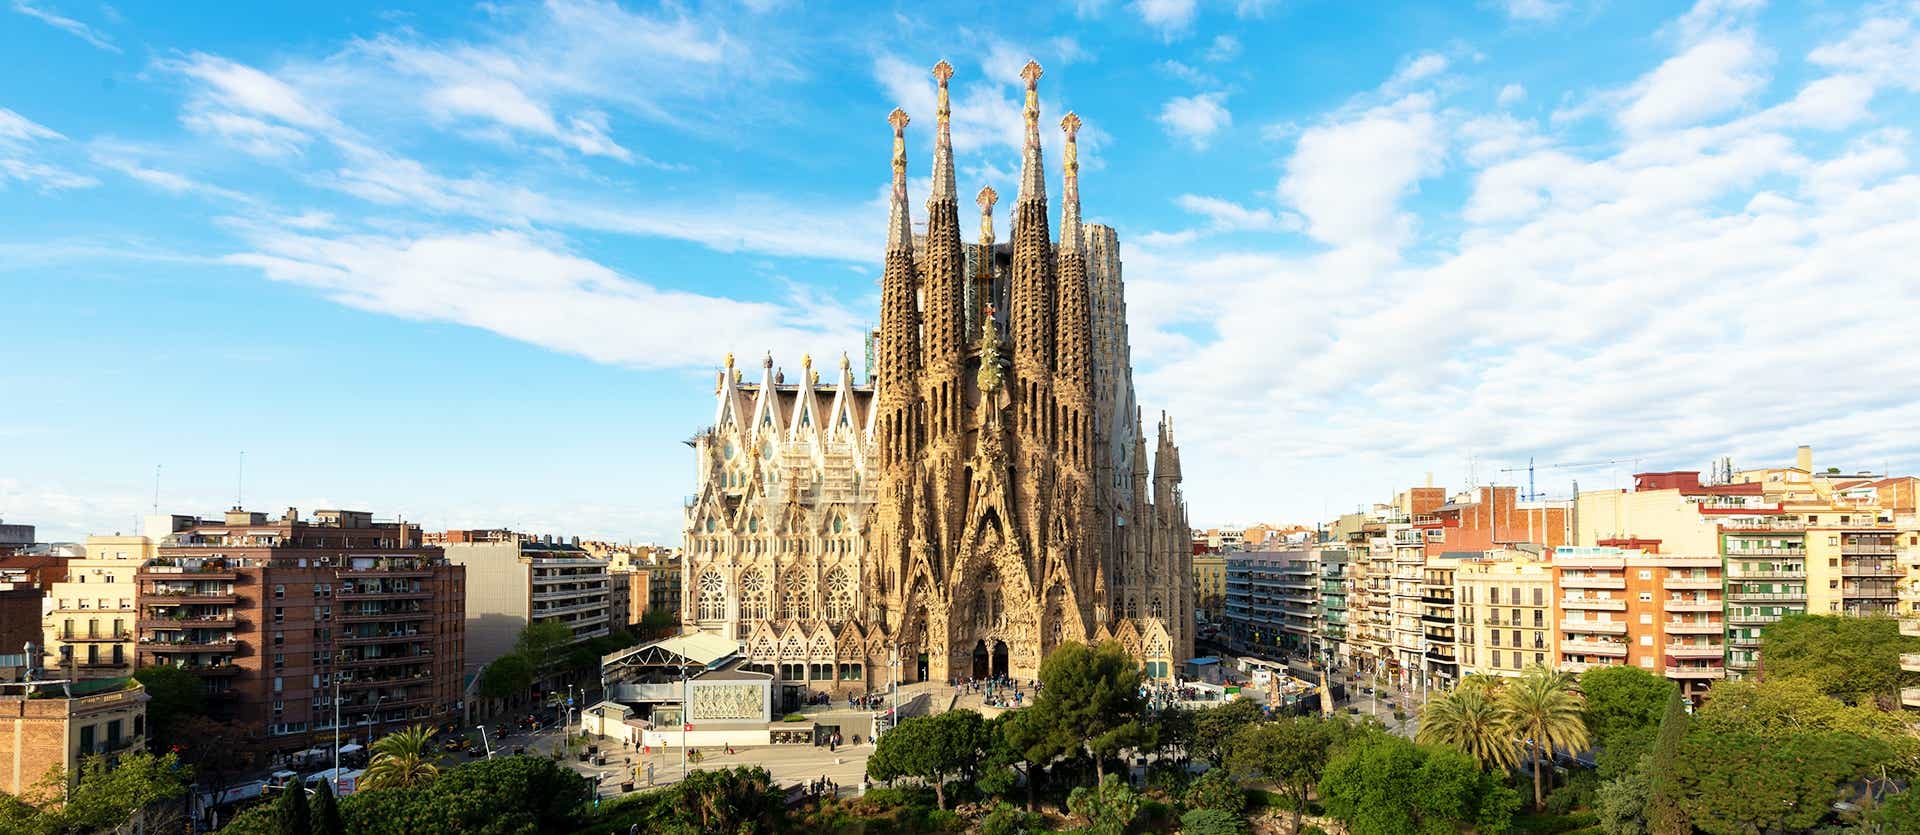 Sagrada Familia <span class="iconos separador"></span> Barcelona